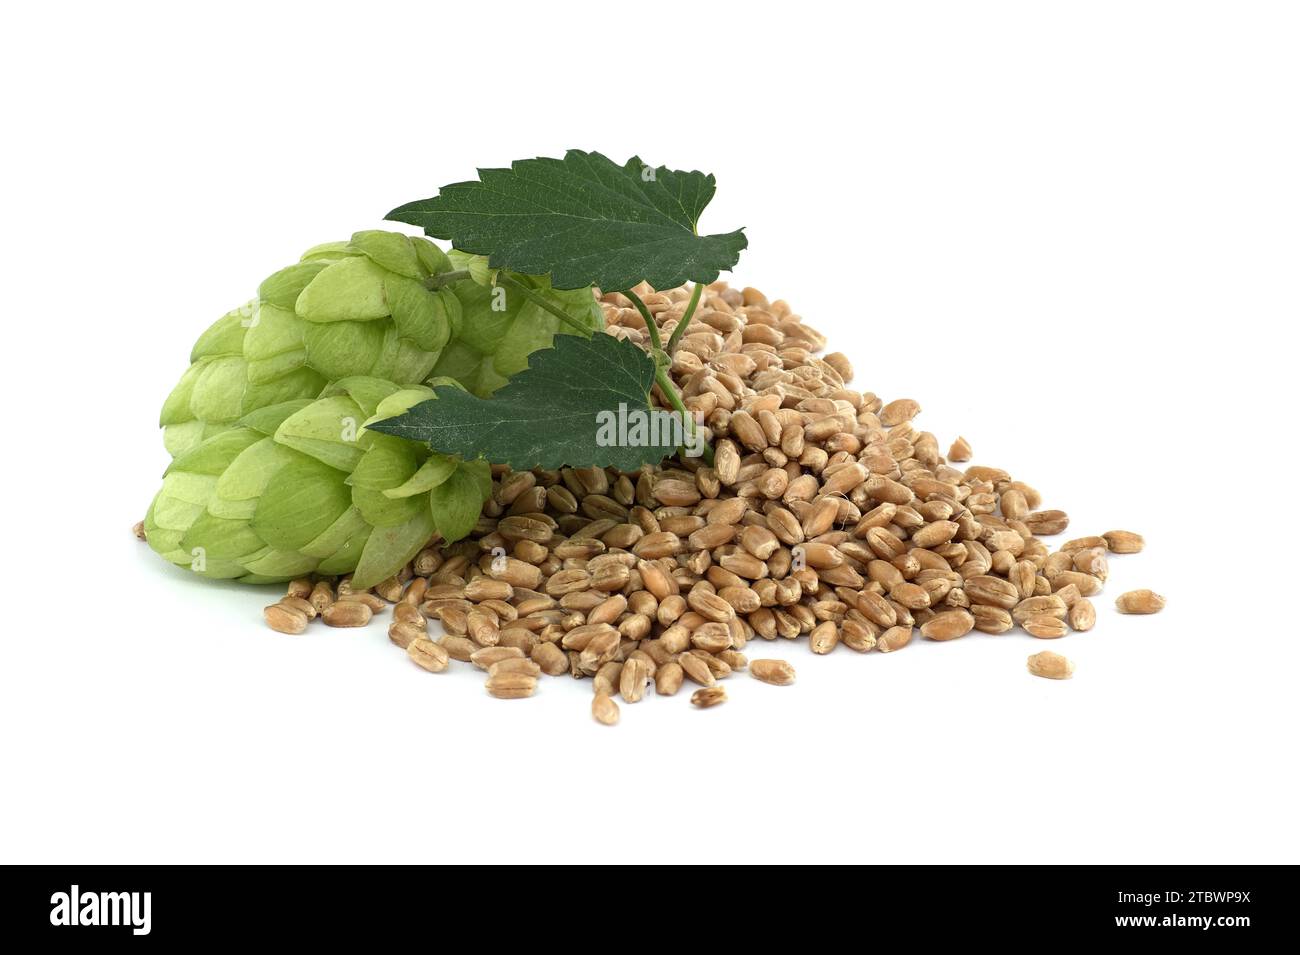 Cônes de houblon vert frais et graines de blé isolées sur fond blanc, bière brassicole et ingrédients pharmaceutiques Banque D'Images